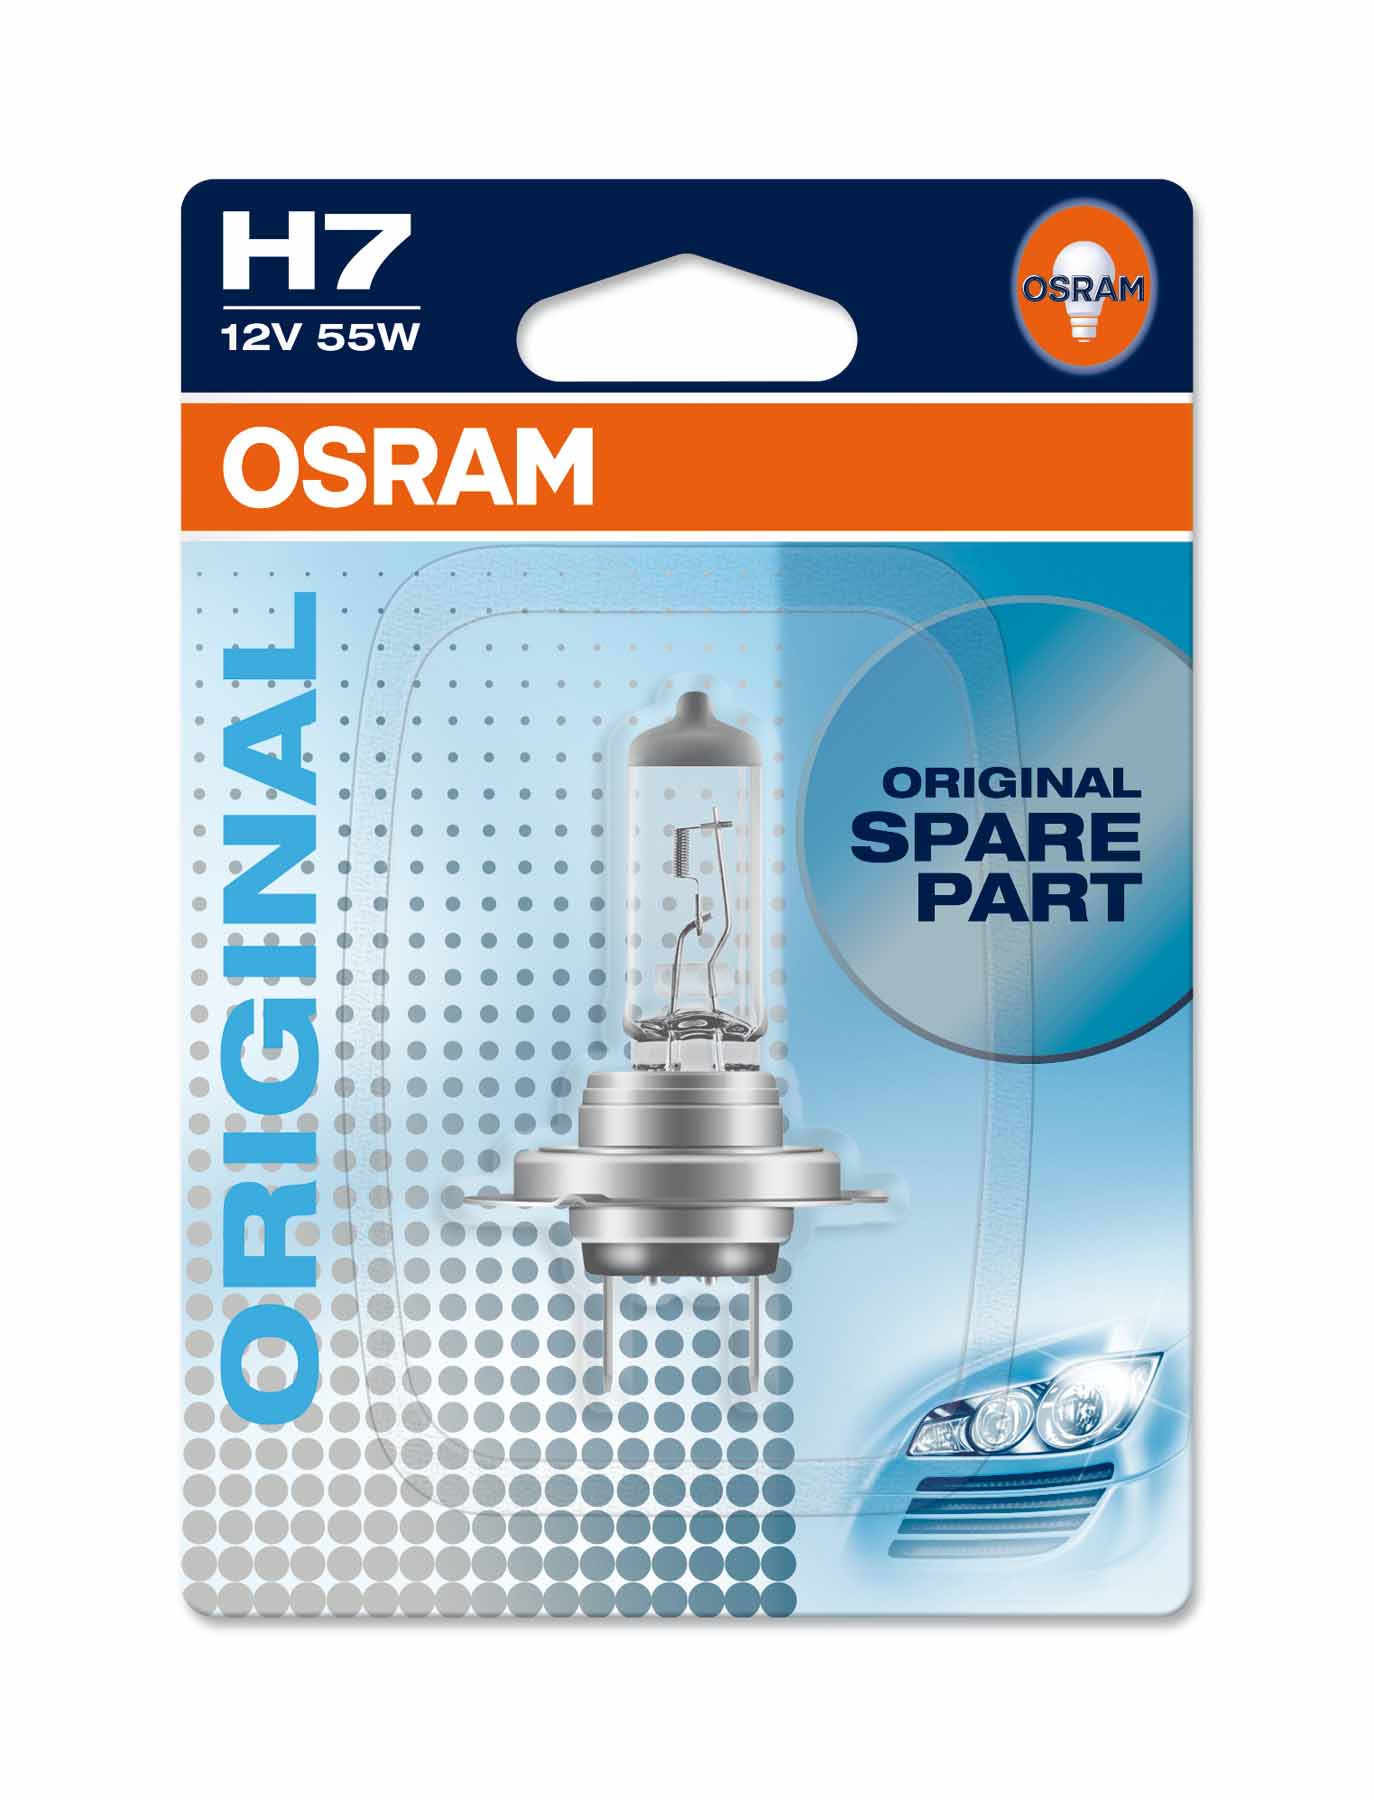 *H7 Original 55W (1 Stk.) | Osram*